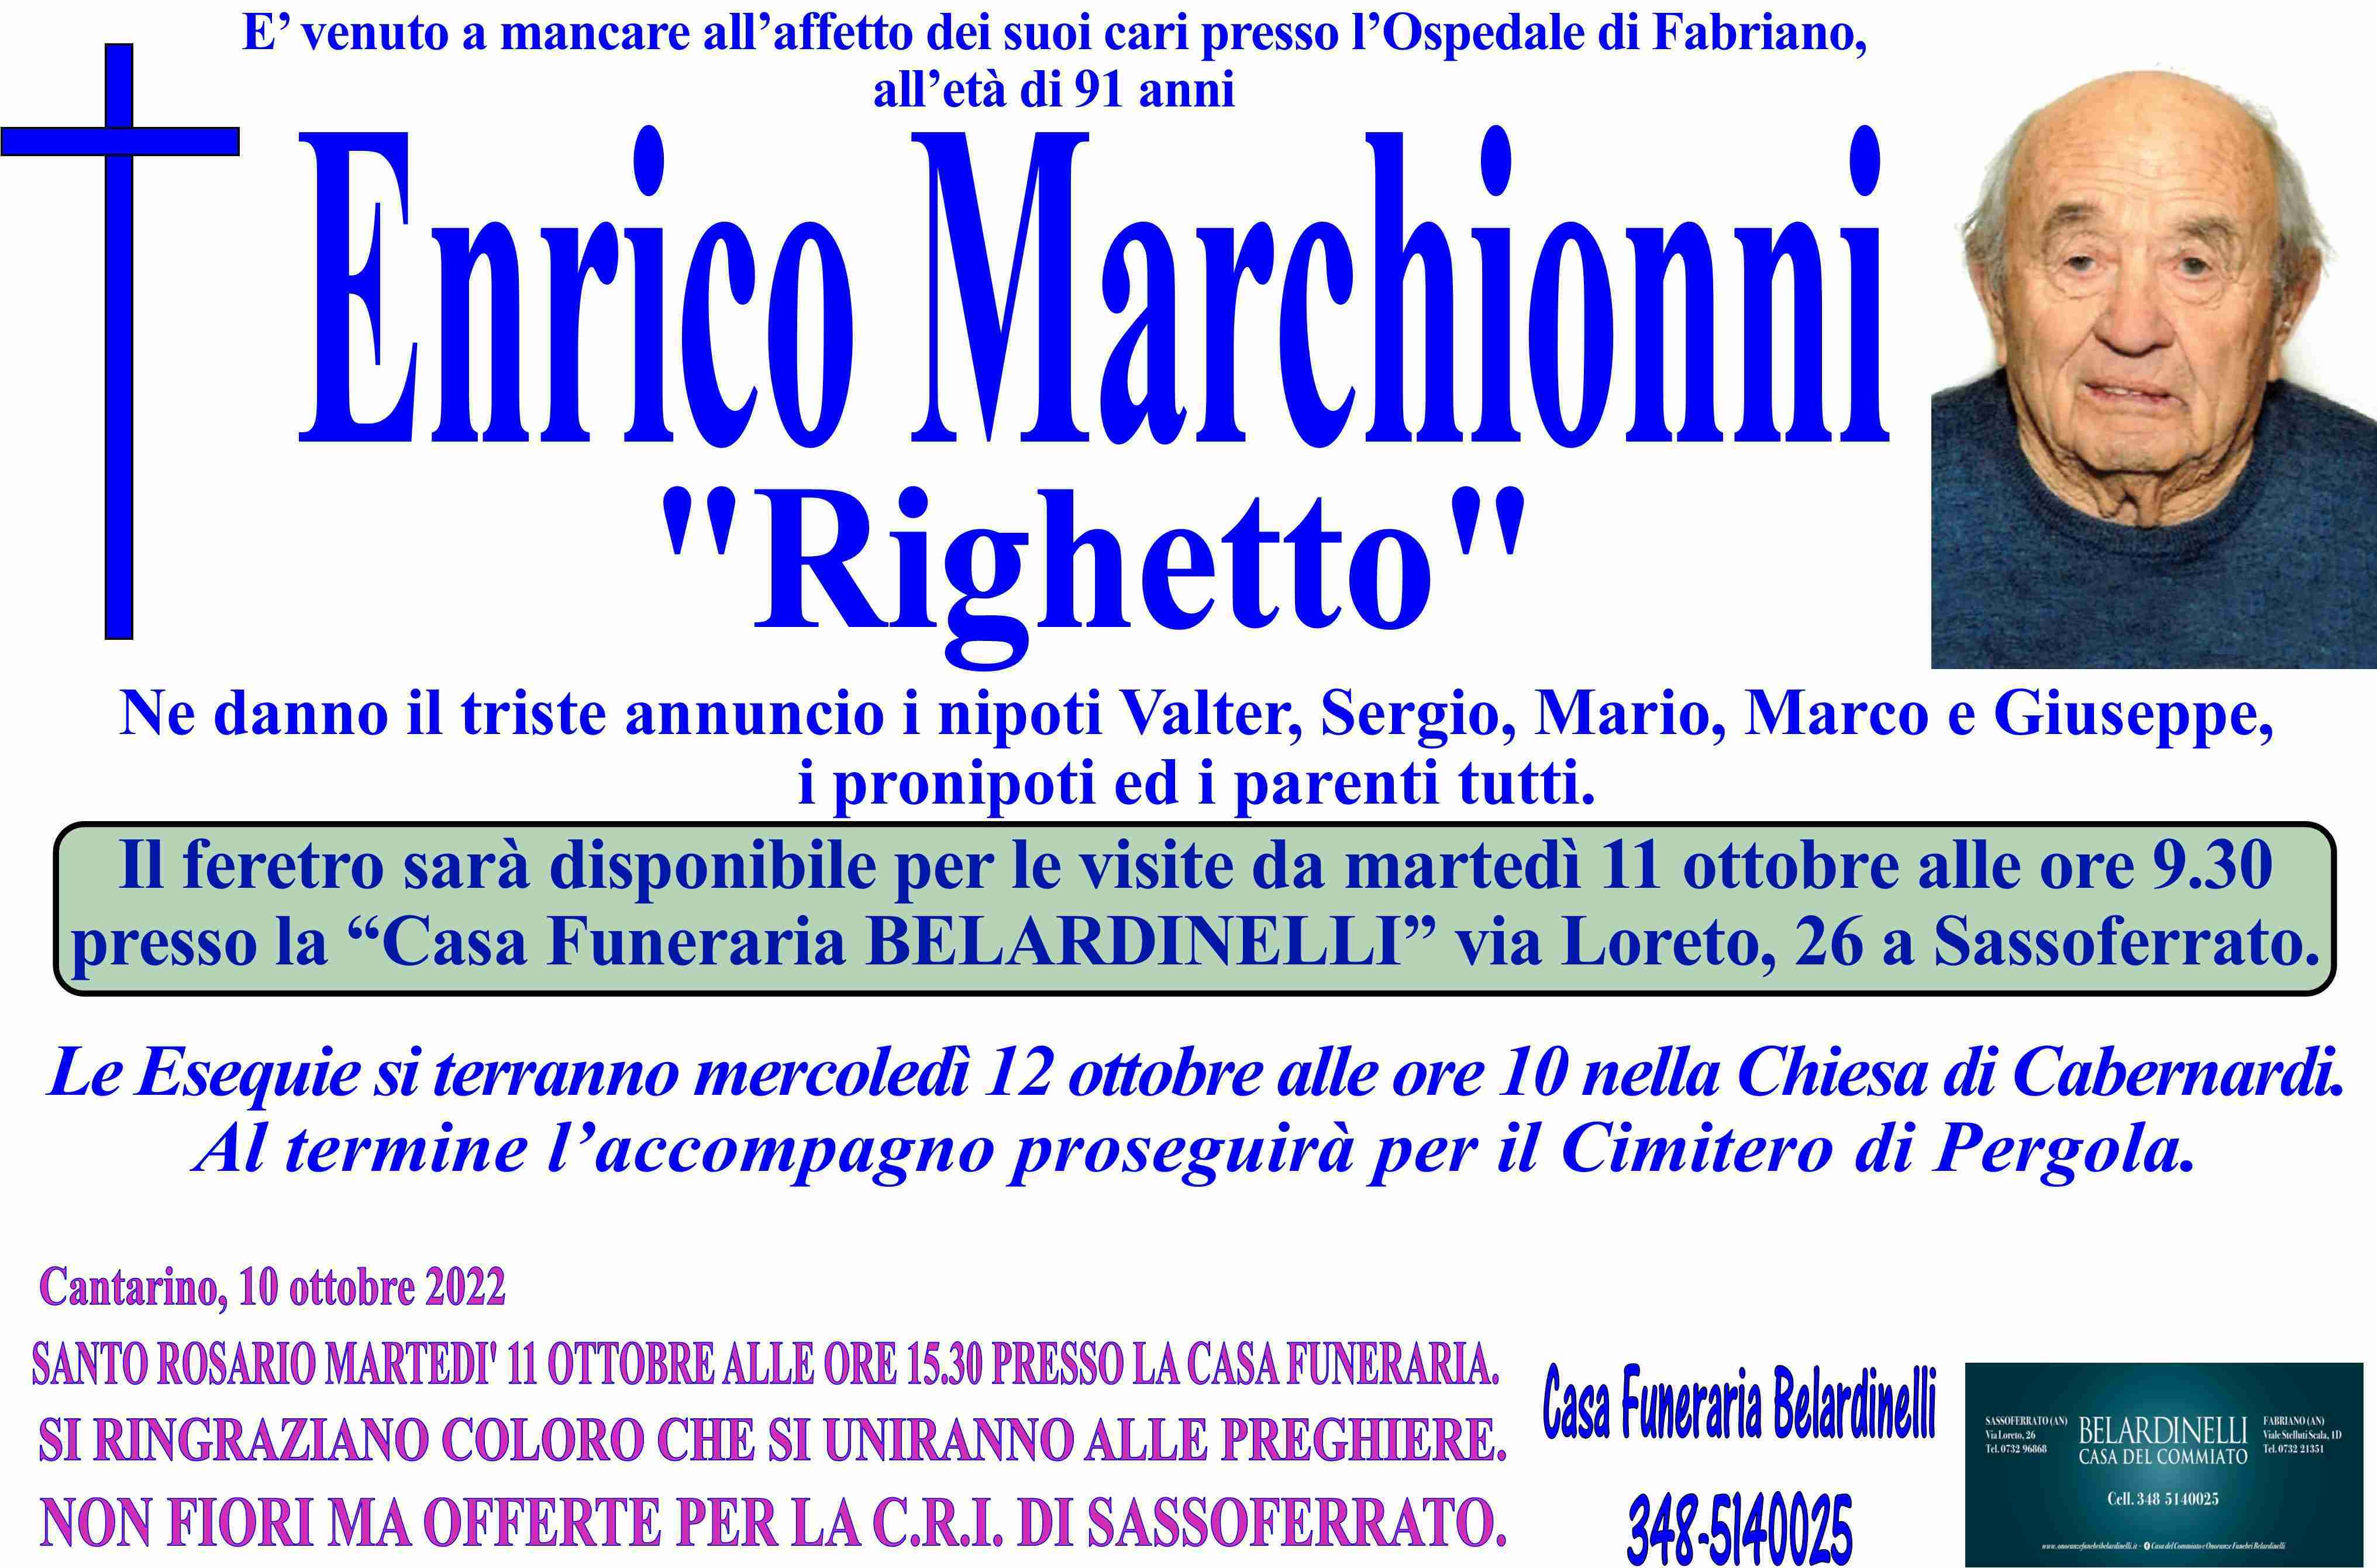 Enrico Marchionni "RIGHETTO"